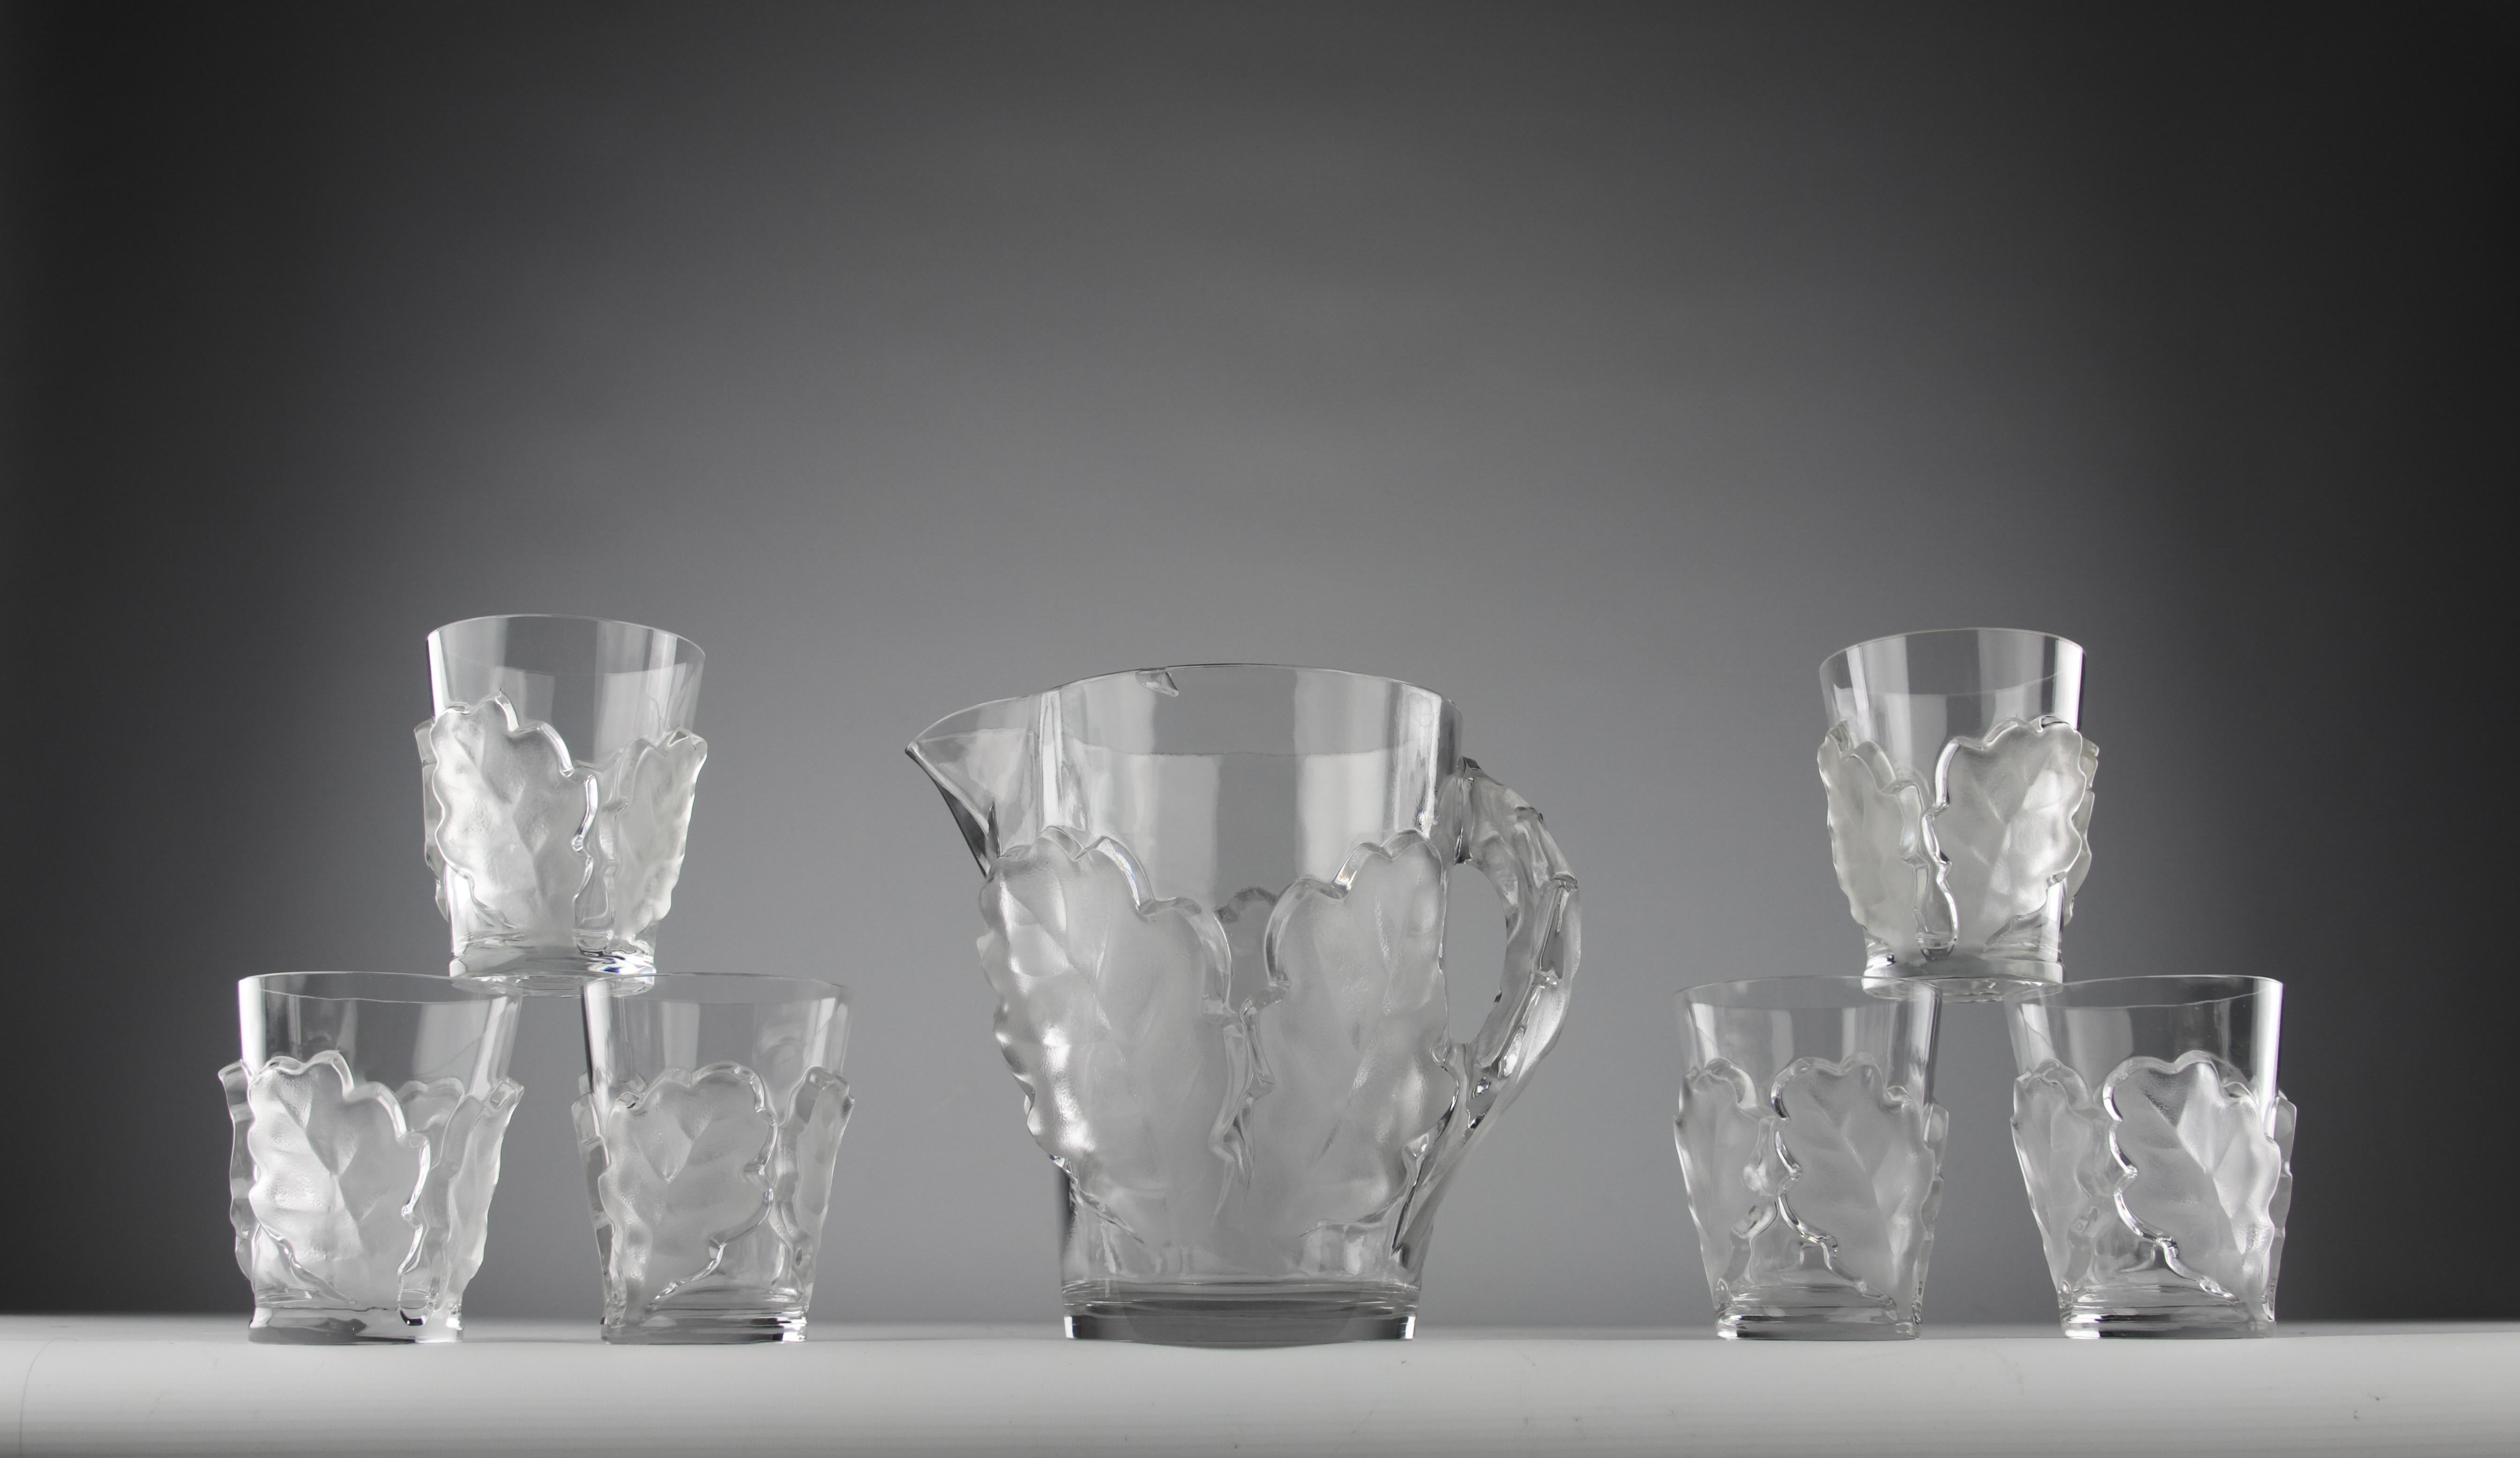 Magnifique service en cristal à feuilles de chêne créé par Marc Lalique pour la Maison Maison en 1950. 

En bon état. Un éclat à noter sur le bord de la carafe.

Dimensions en cm ( H x L x l ) et ( H x D ) :
- Carafe 21,7 x 24 x 15,8
- Verre 11,8 x